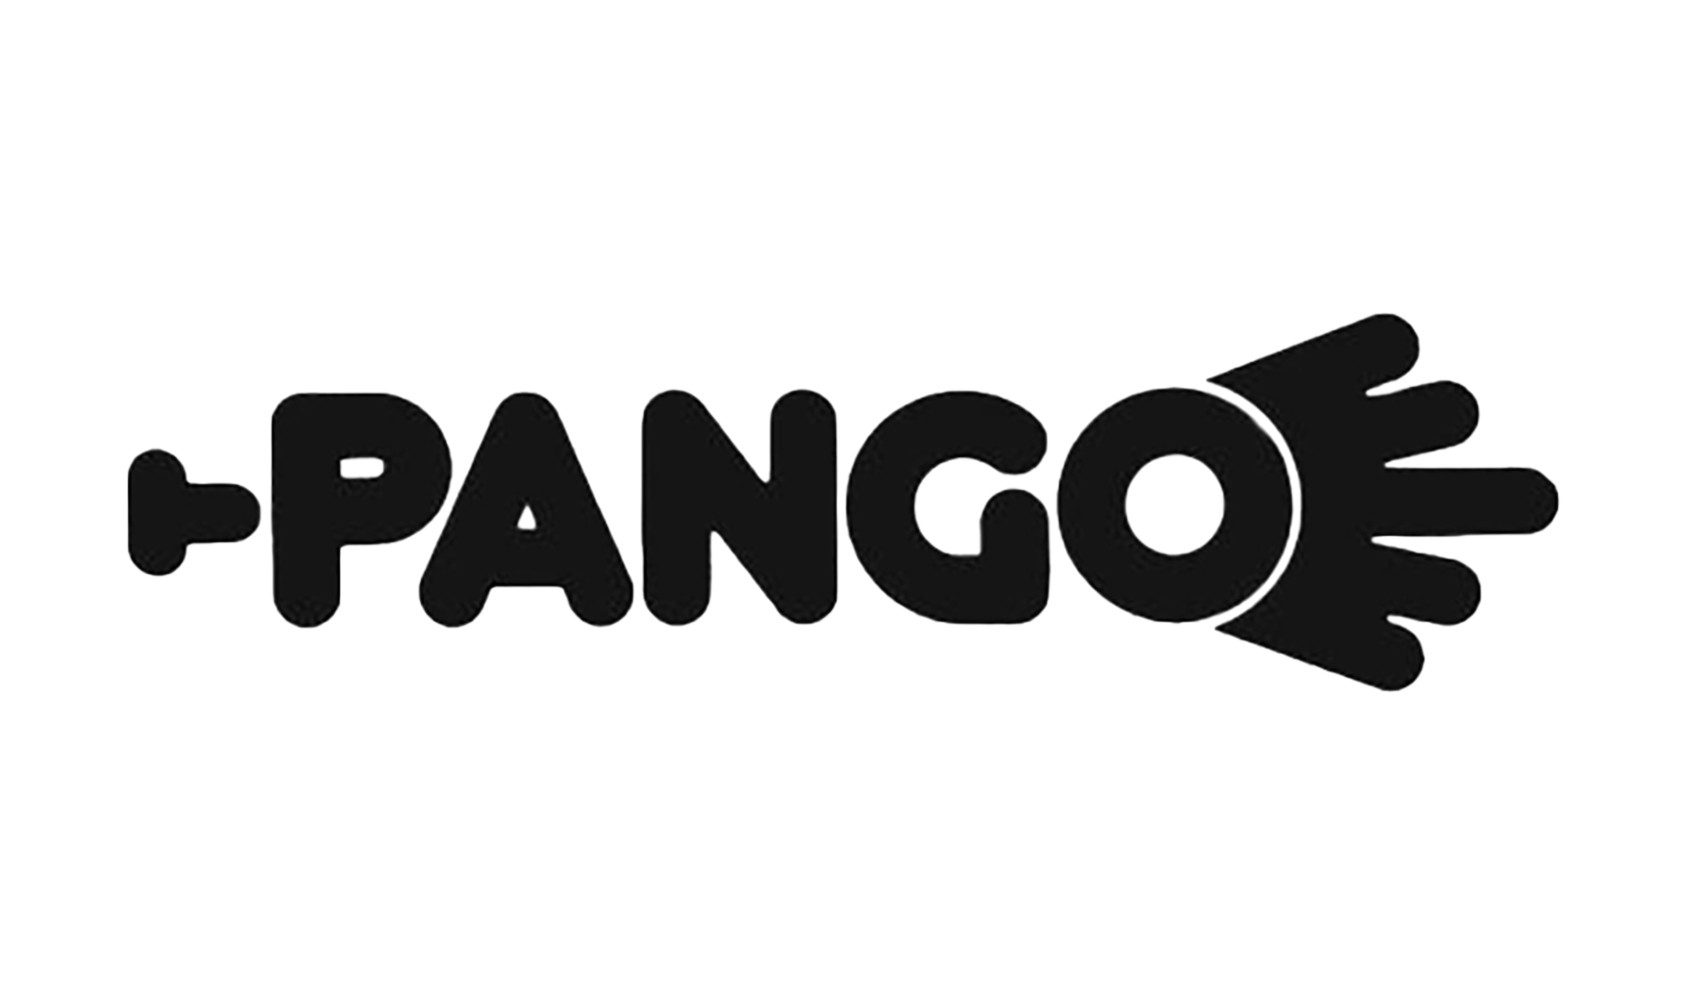 PANGO